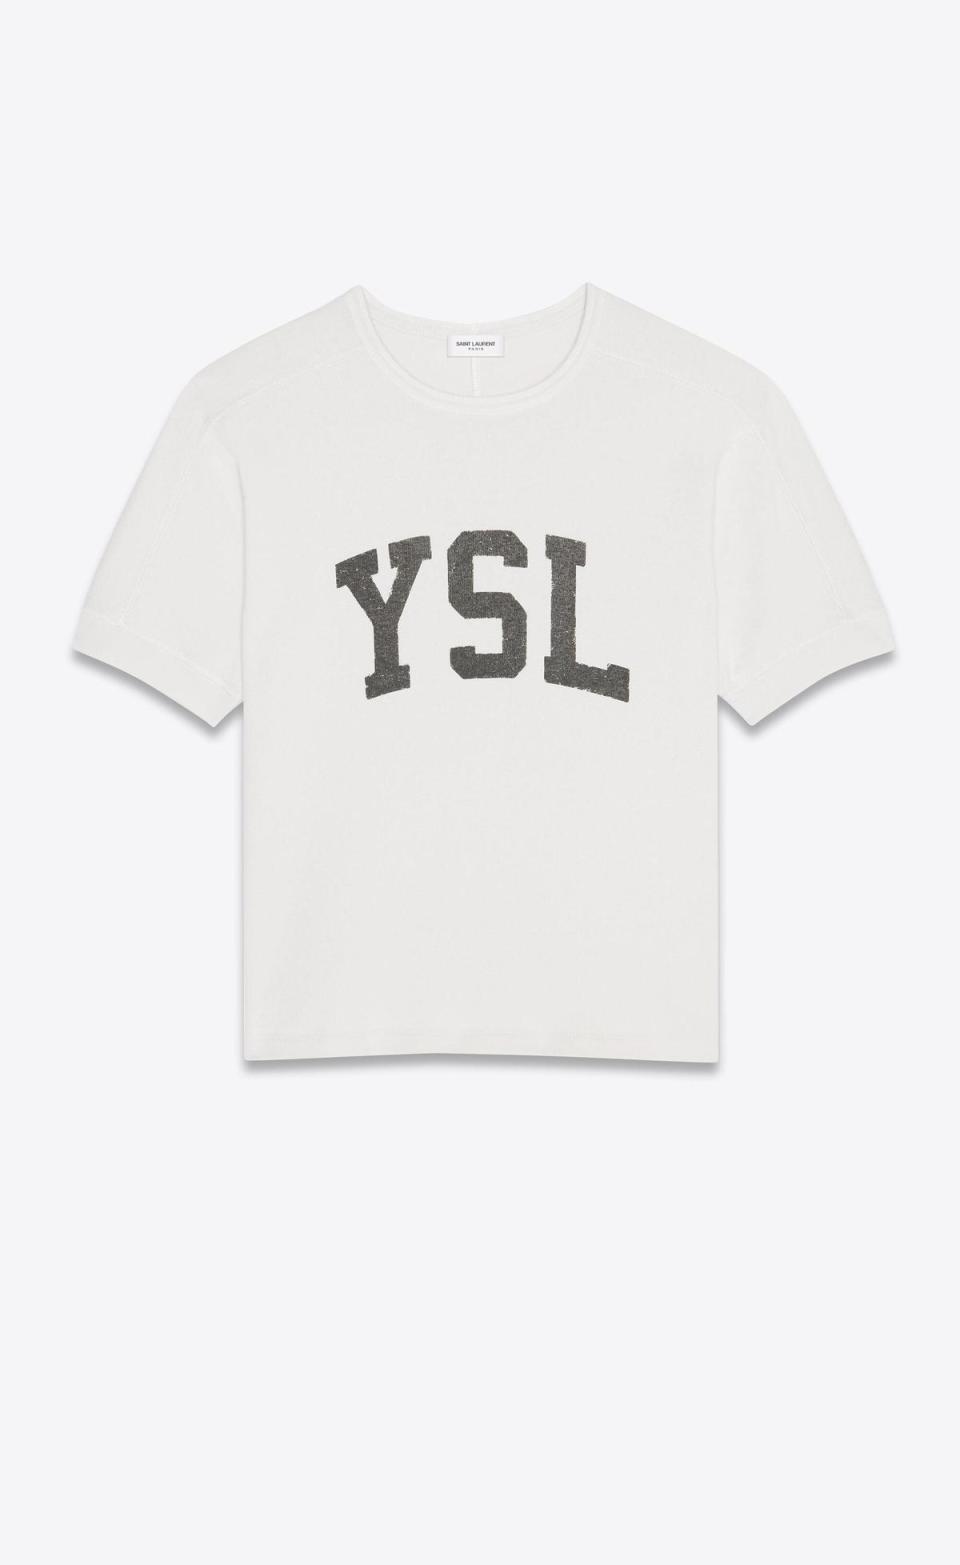 曾敬驊與曹佑寧同款的白色YSL標誌復古效果上衣。NT$17,850（SAINT LAURENT提供）